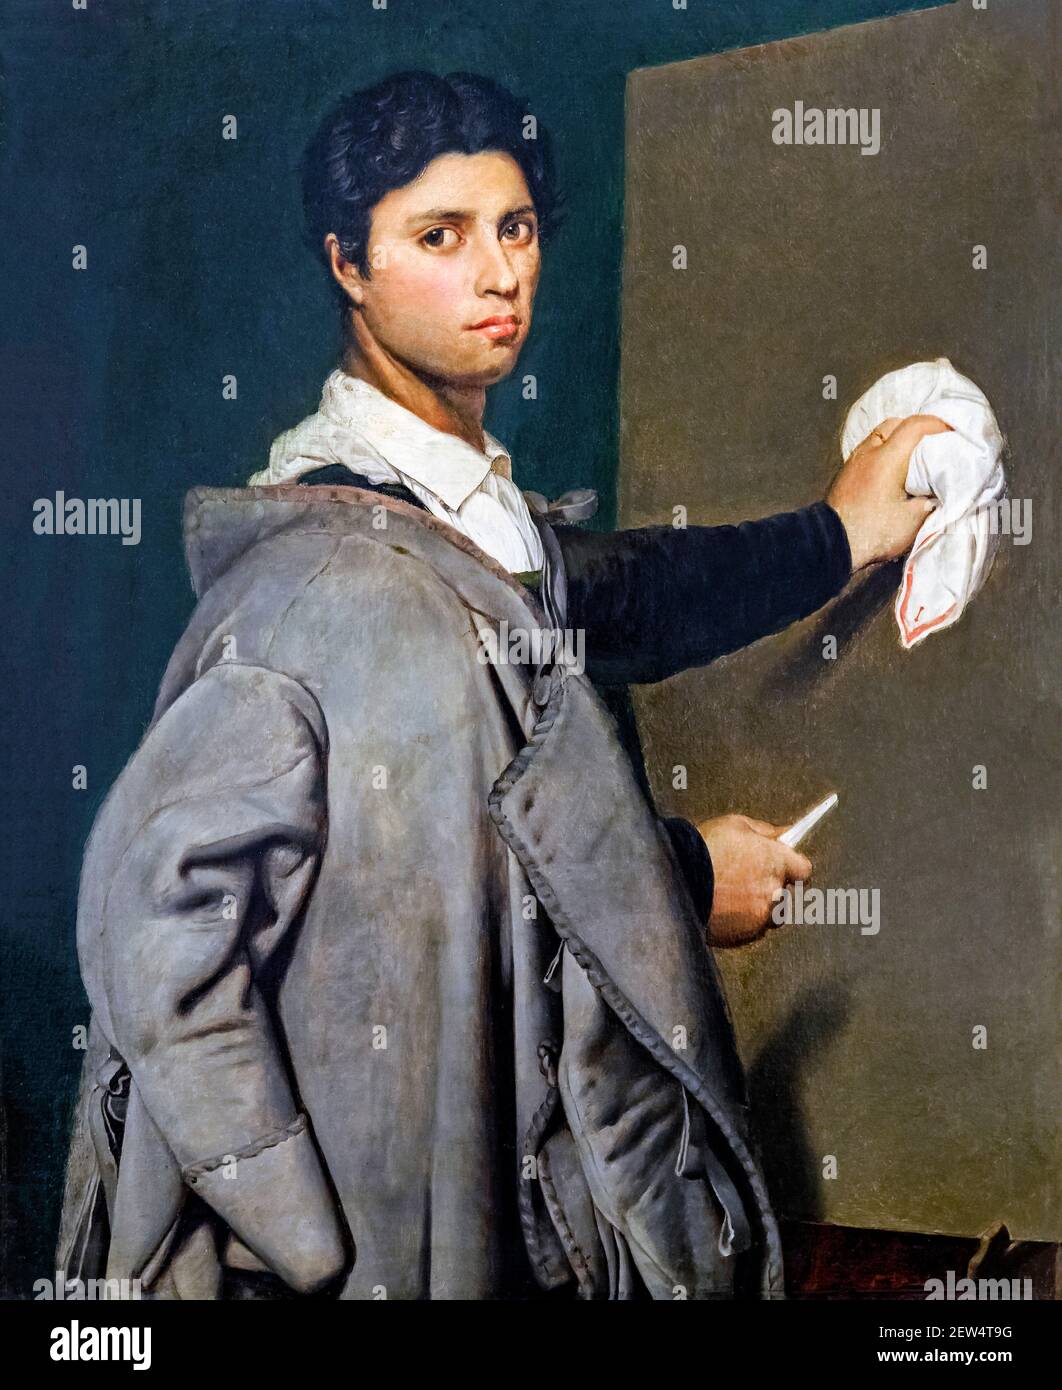 Ingres. Porträt des französischen neoklassizistischen Malers Jean-Auguste-Dominique Ingres (1780-1867) von Marie-Anne-Julie Forestier, Öl auf Leinwand, 1807. Das Gemälde ist eine Kopie des Selbstporträts von Ingres aus dem Jahr 1804. Stockfoto